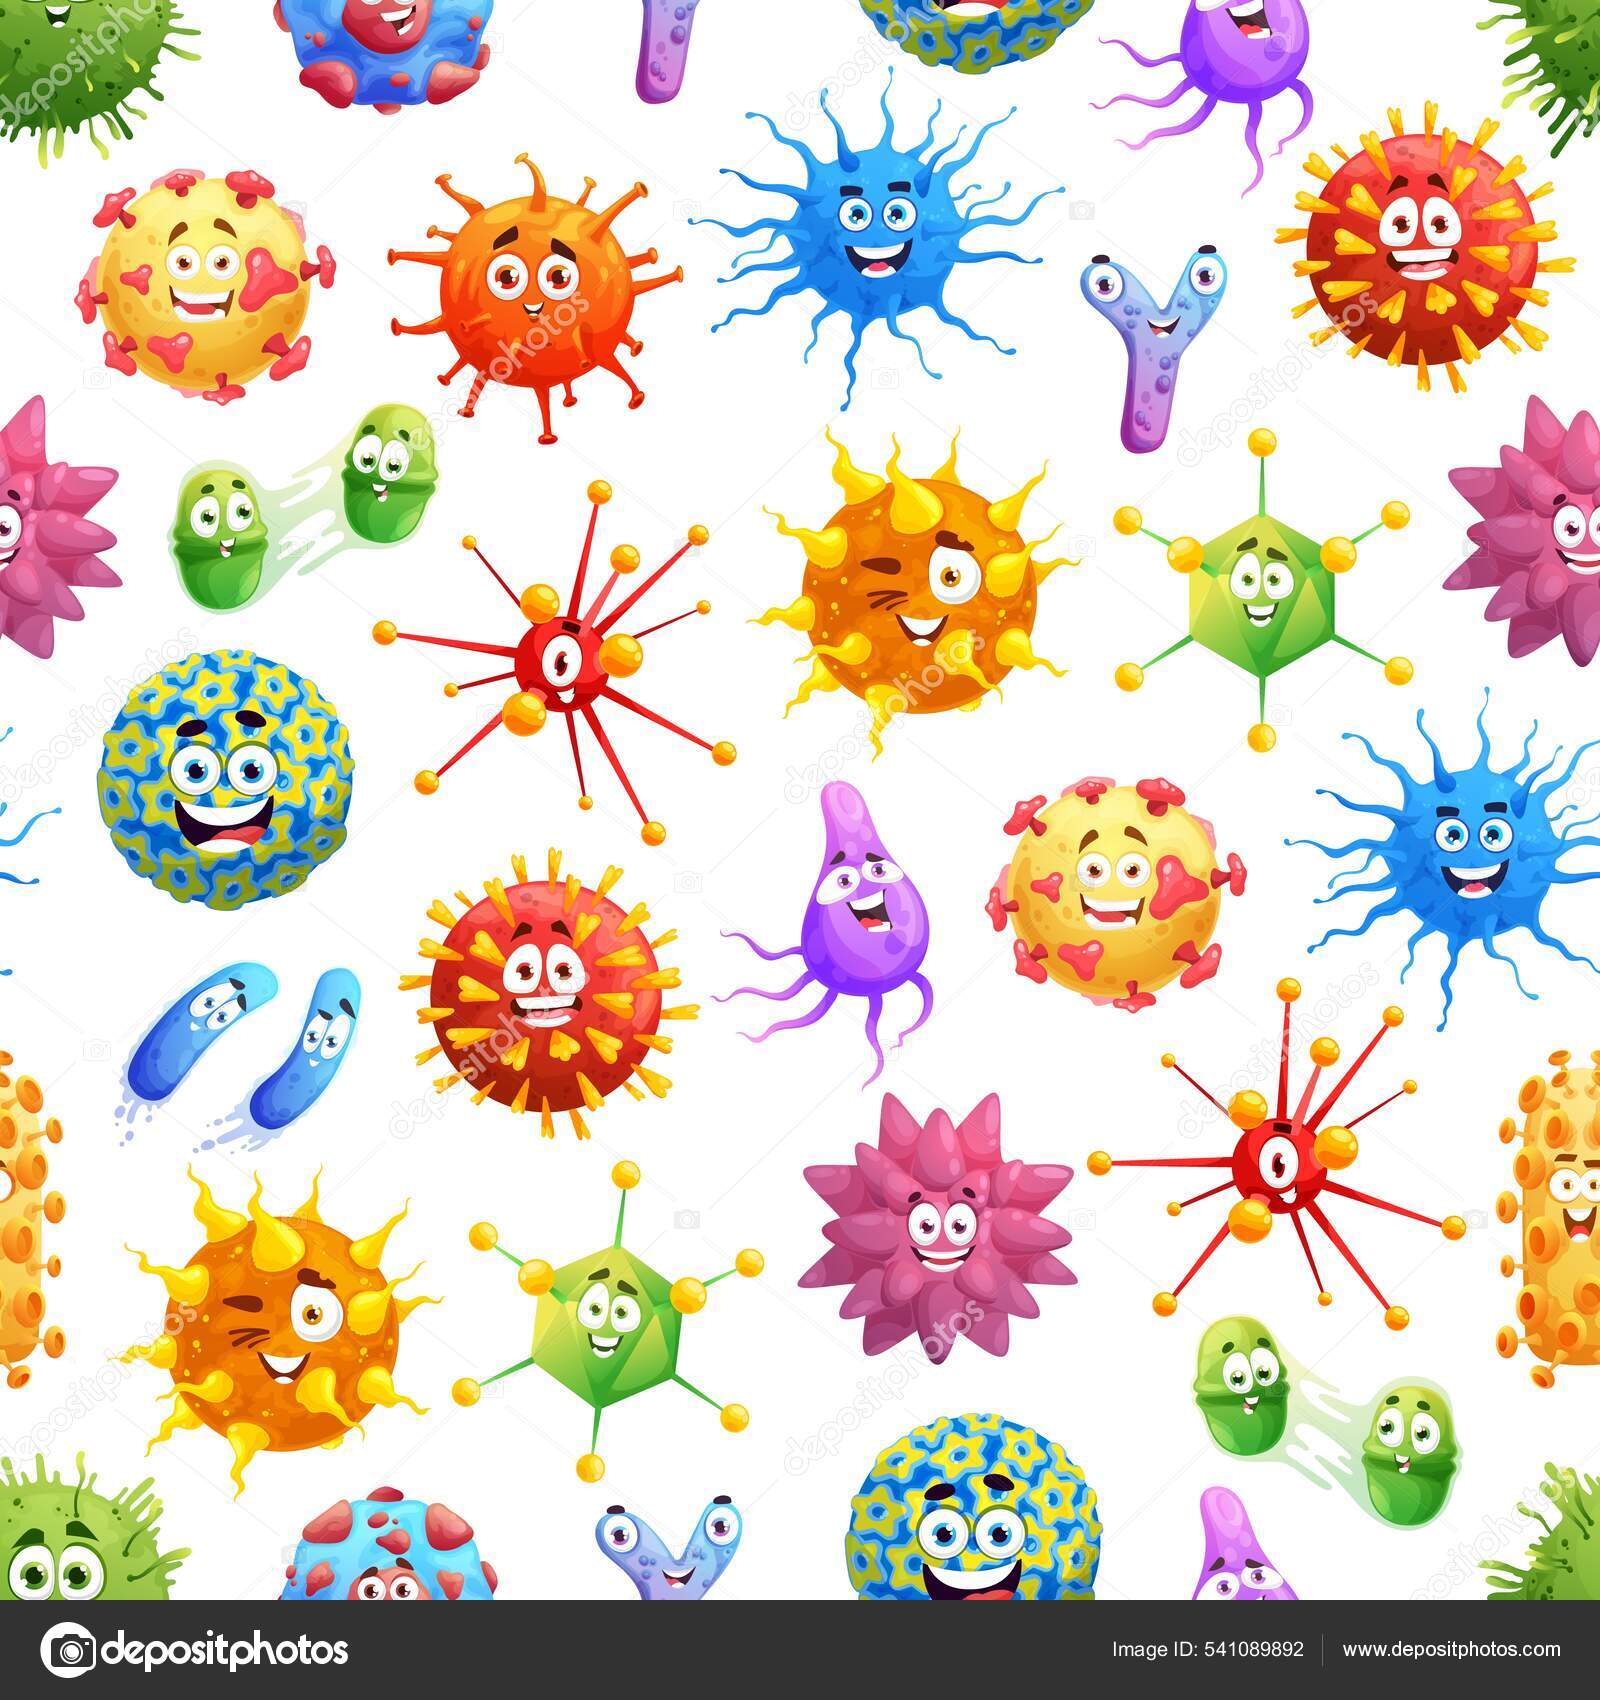 Immune cells cartoon Vector Art Stock Images | Depositphotos